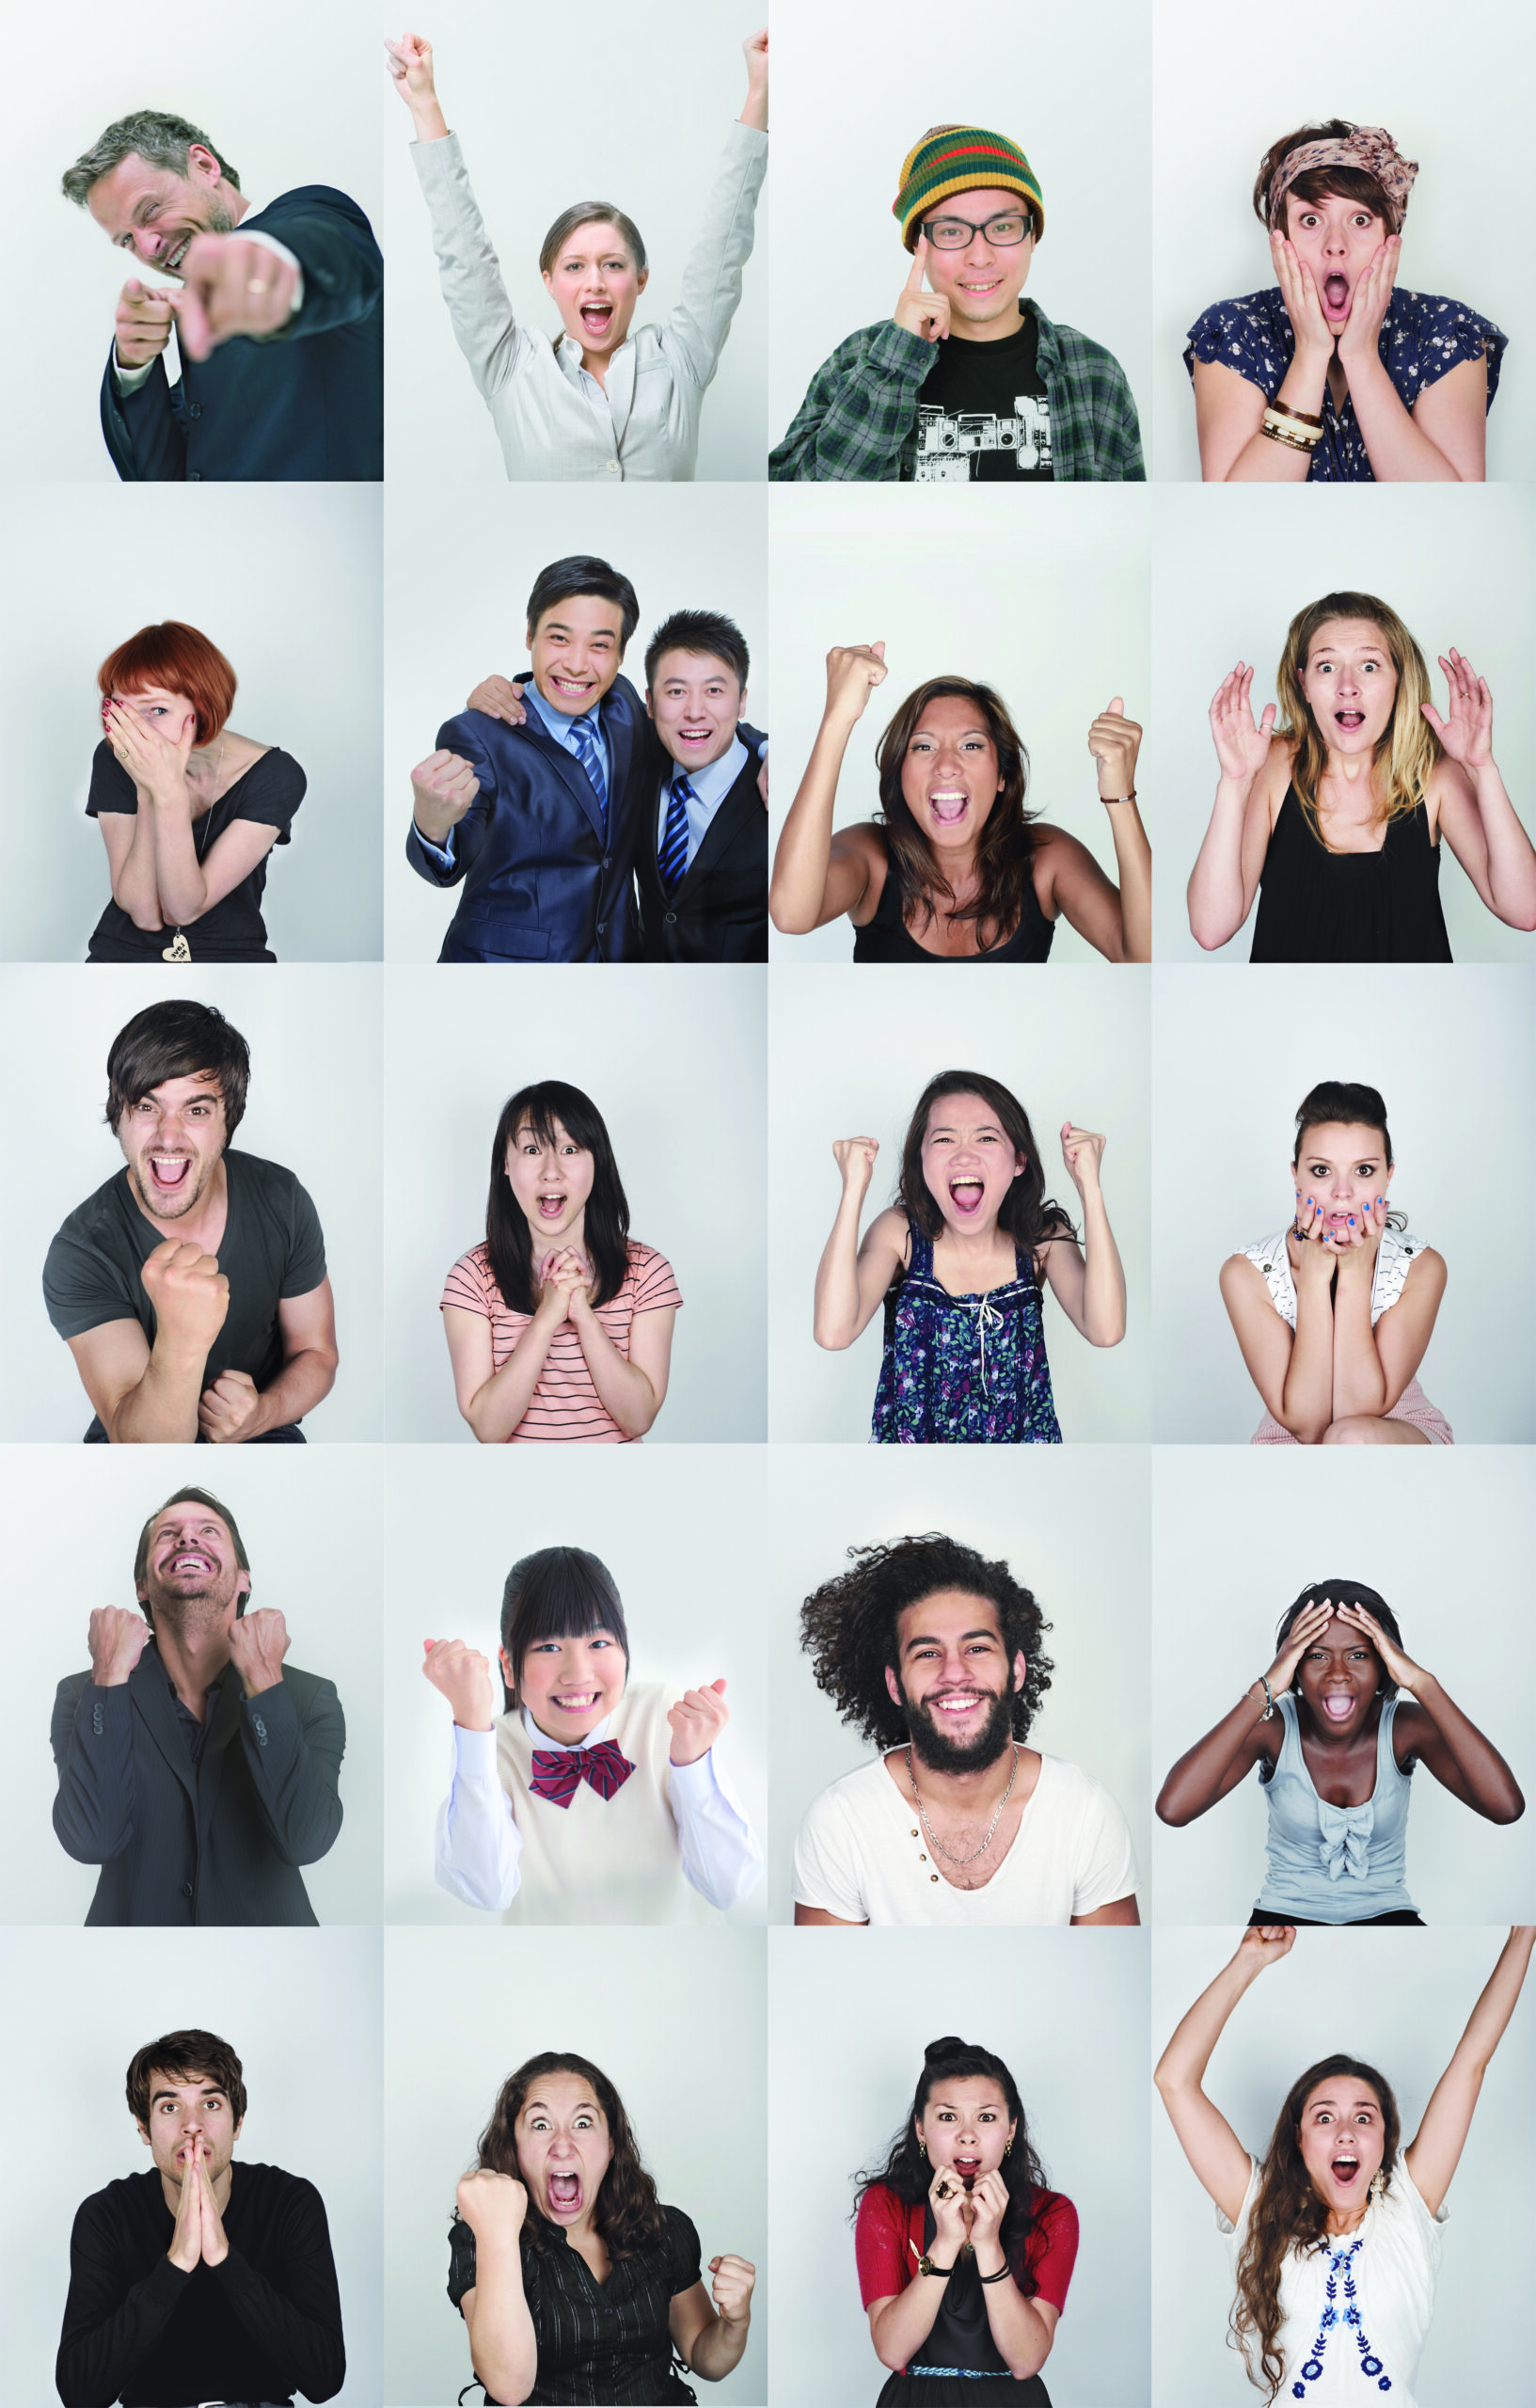 Grupa ludzi o różnych emocjach, który cieszą się że wypełnili darmowy test online 